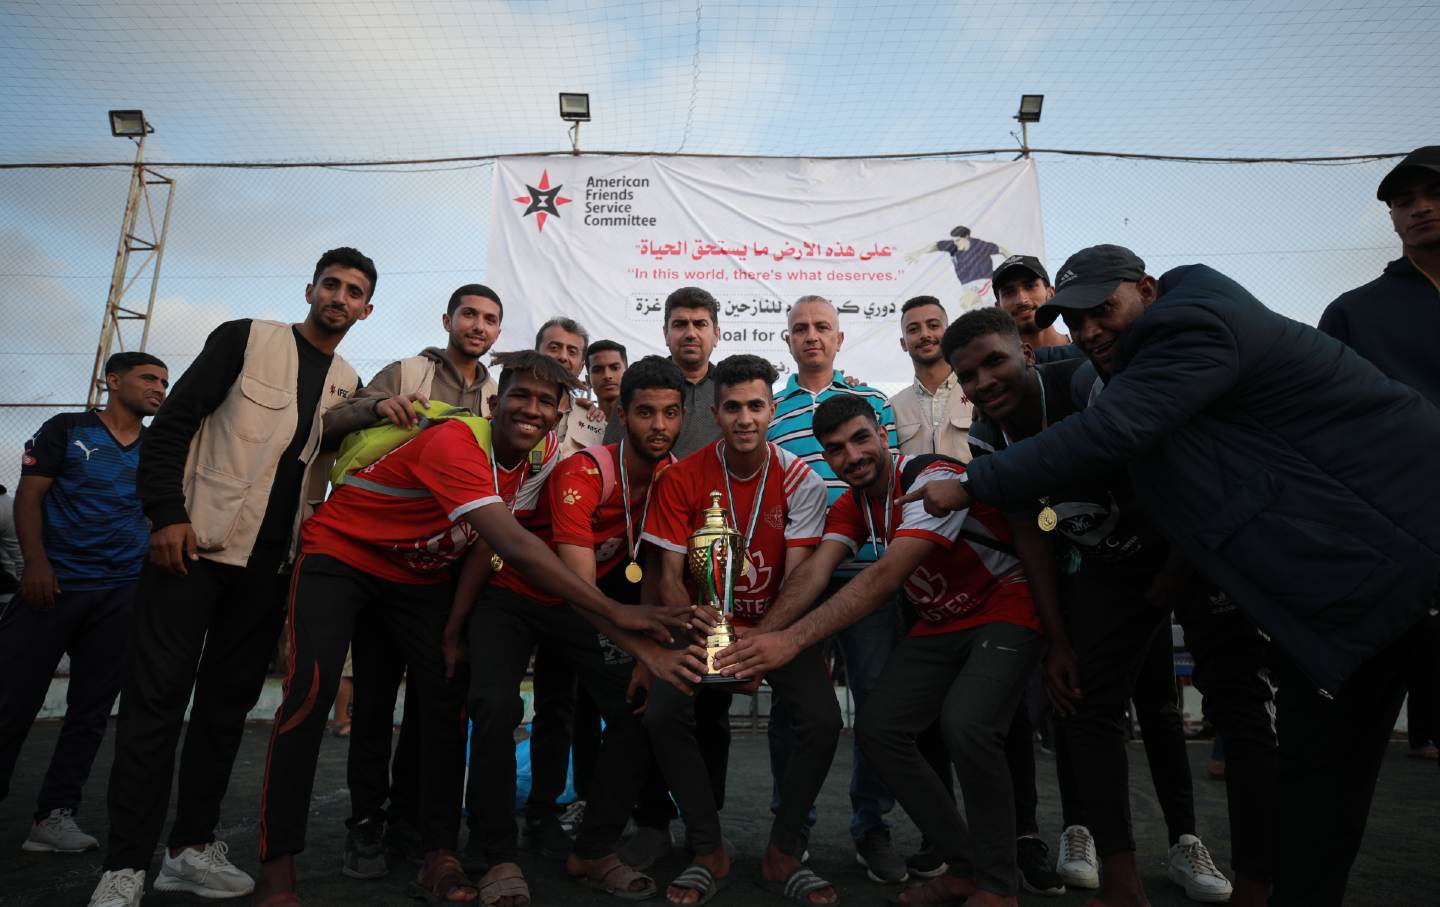 Siegerteam posiert mit Trophäe in Rafah.